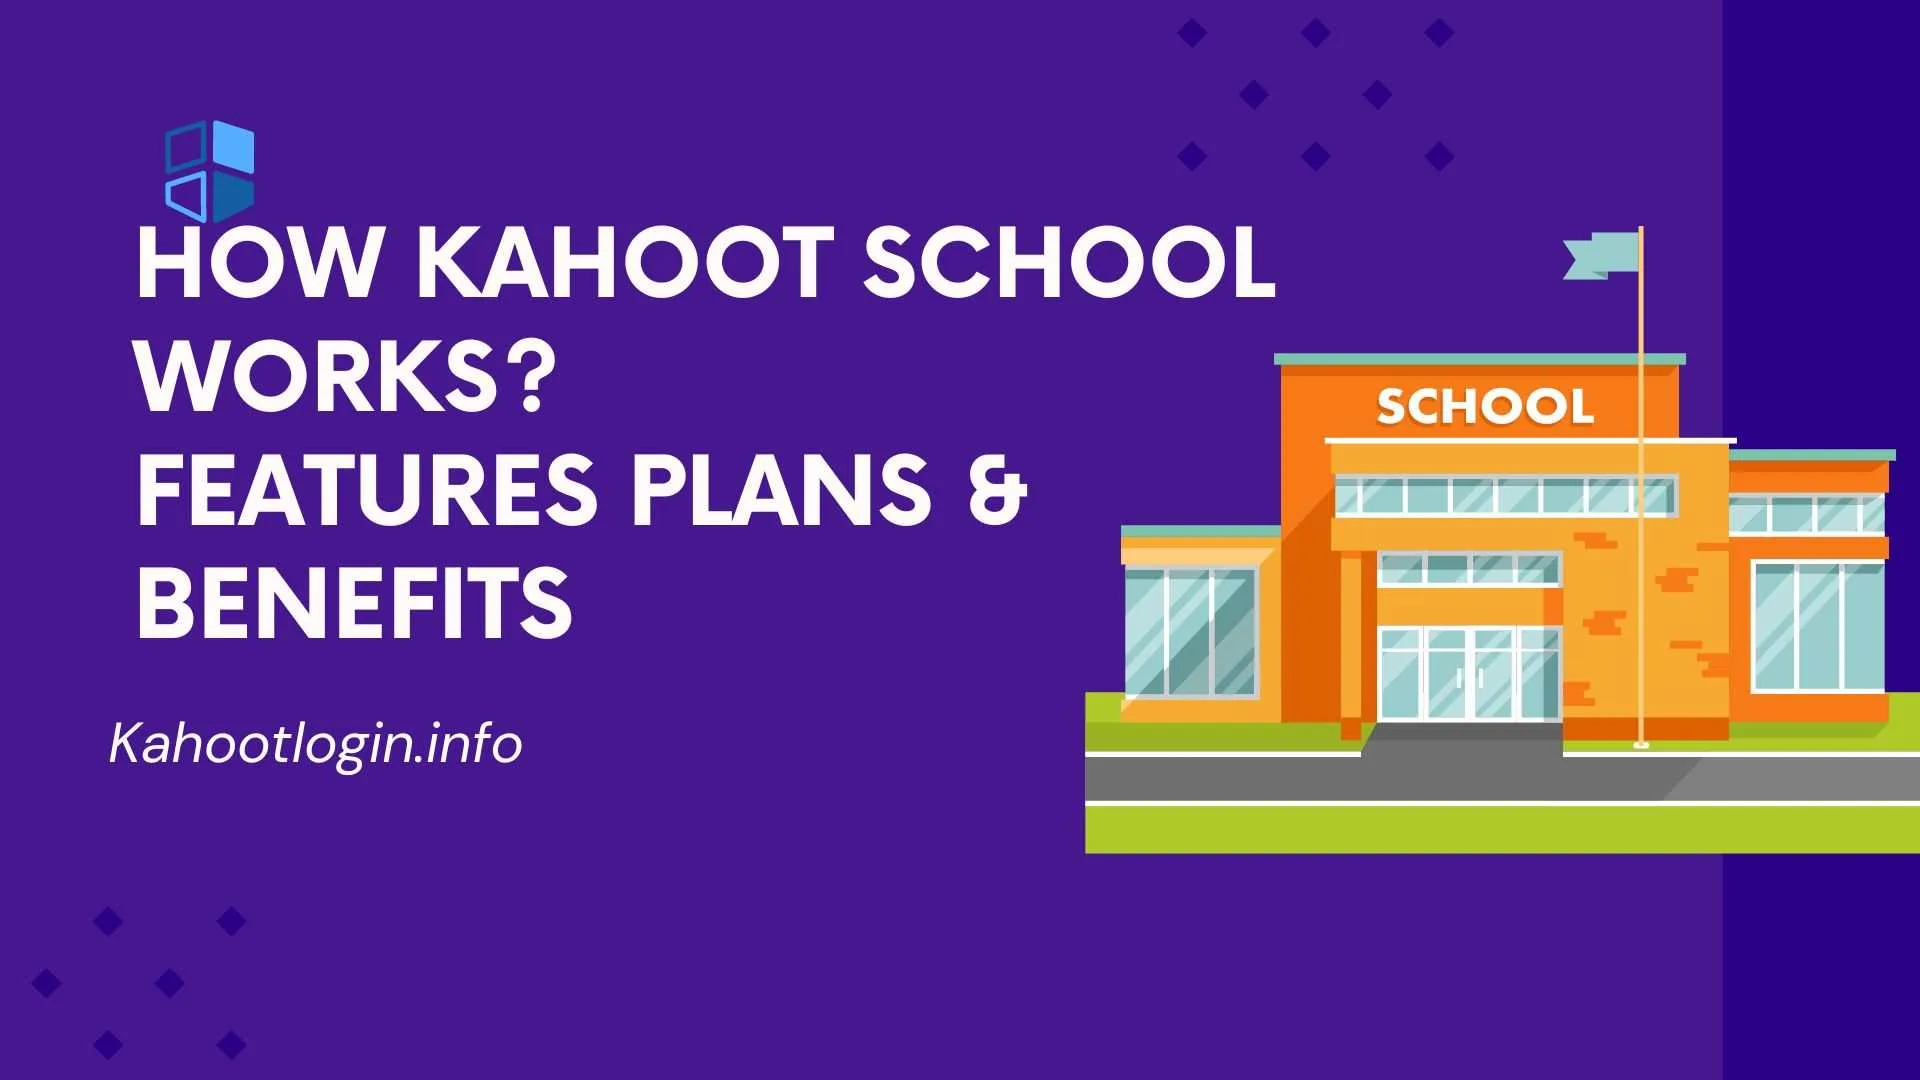 Kahoot School